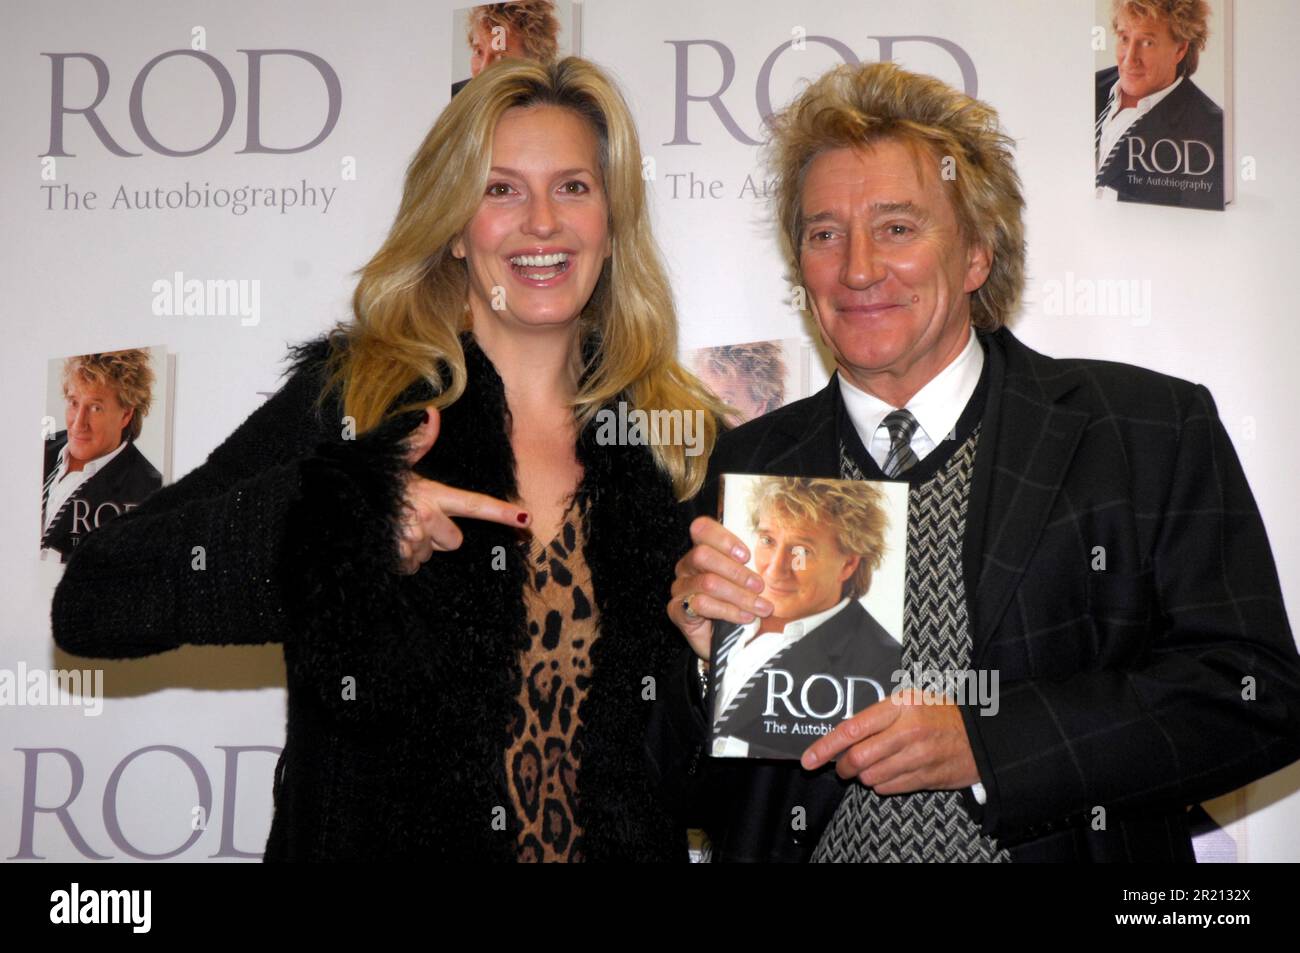 Foto von Rod Stewart mit seiner Frau Penny Lancaster, die von Hunderten von Fans begrüßt wurde, als er seine Autobiografie im Epping Bookstore, Epping, Essex unterzeichnete. Stockfoto